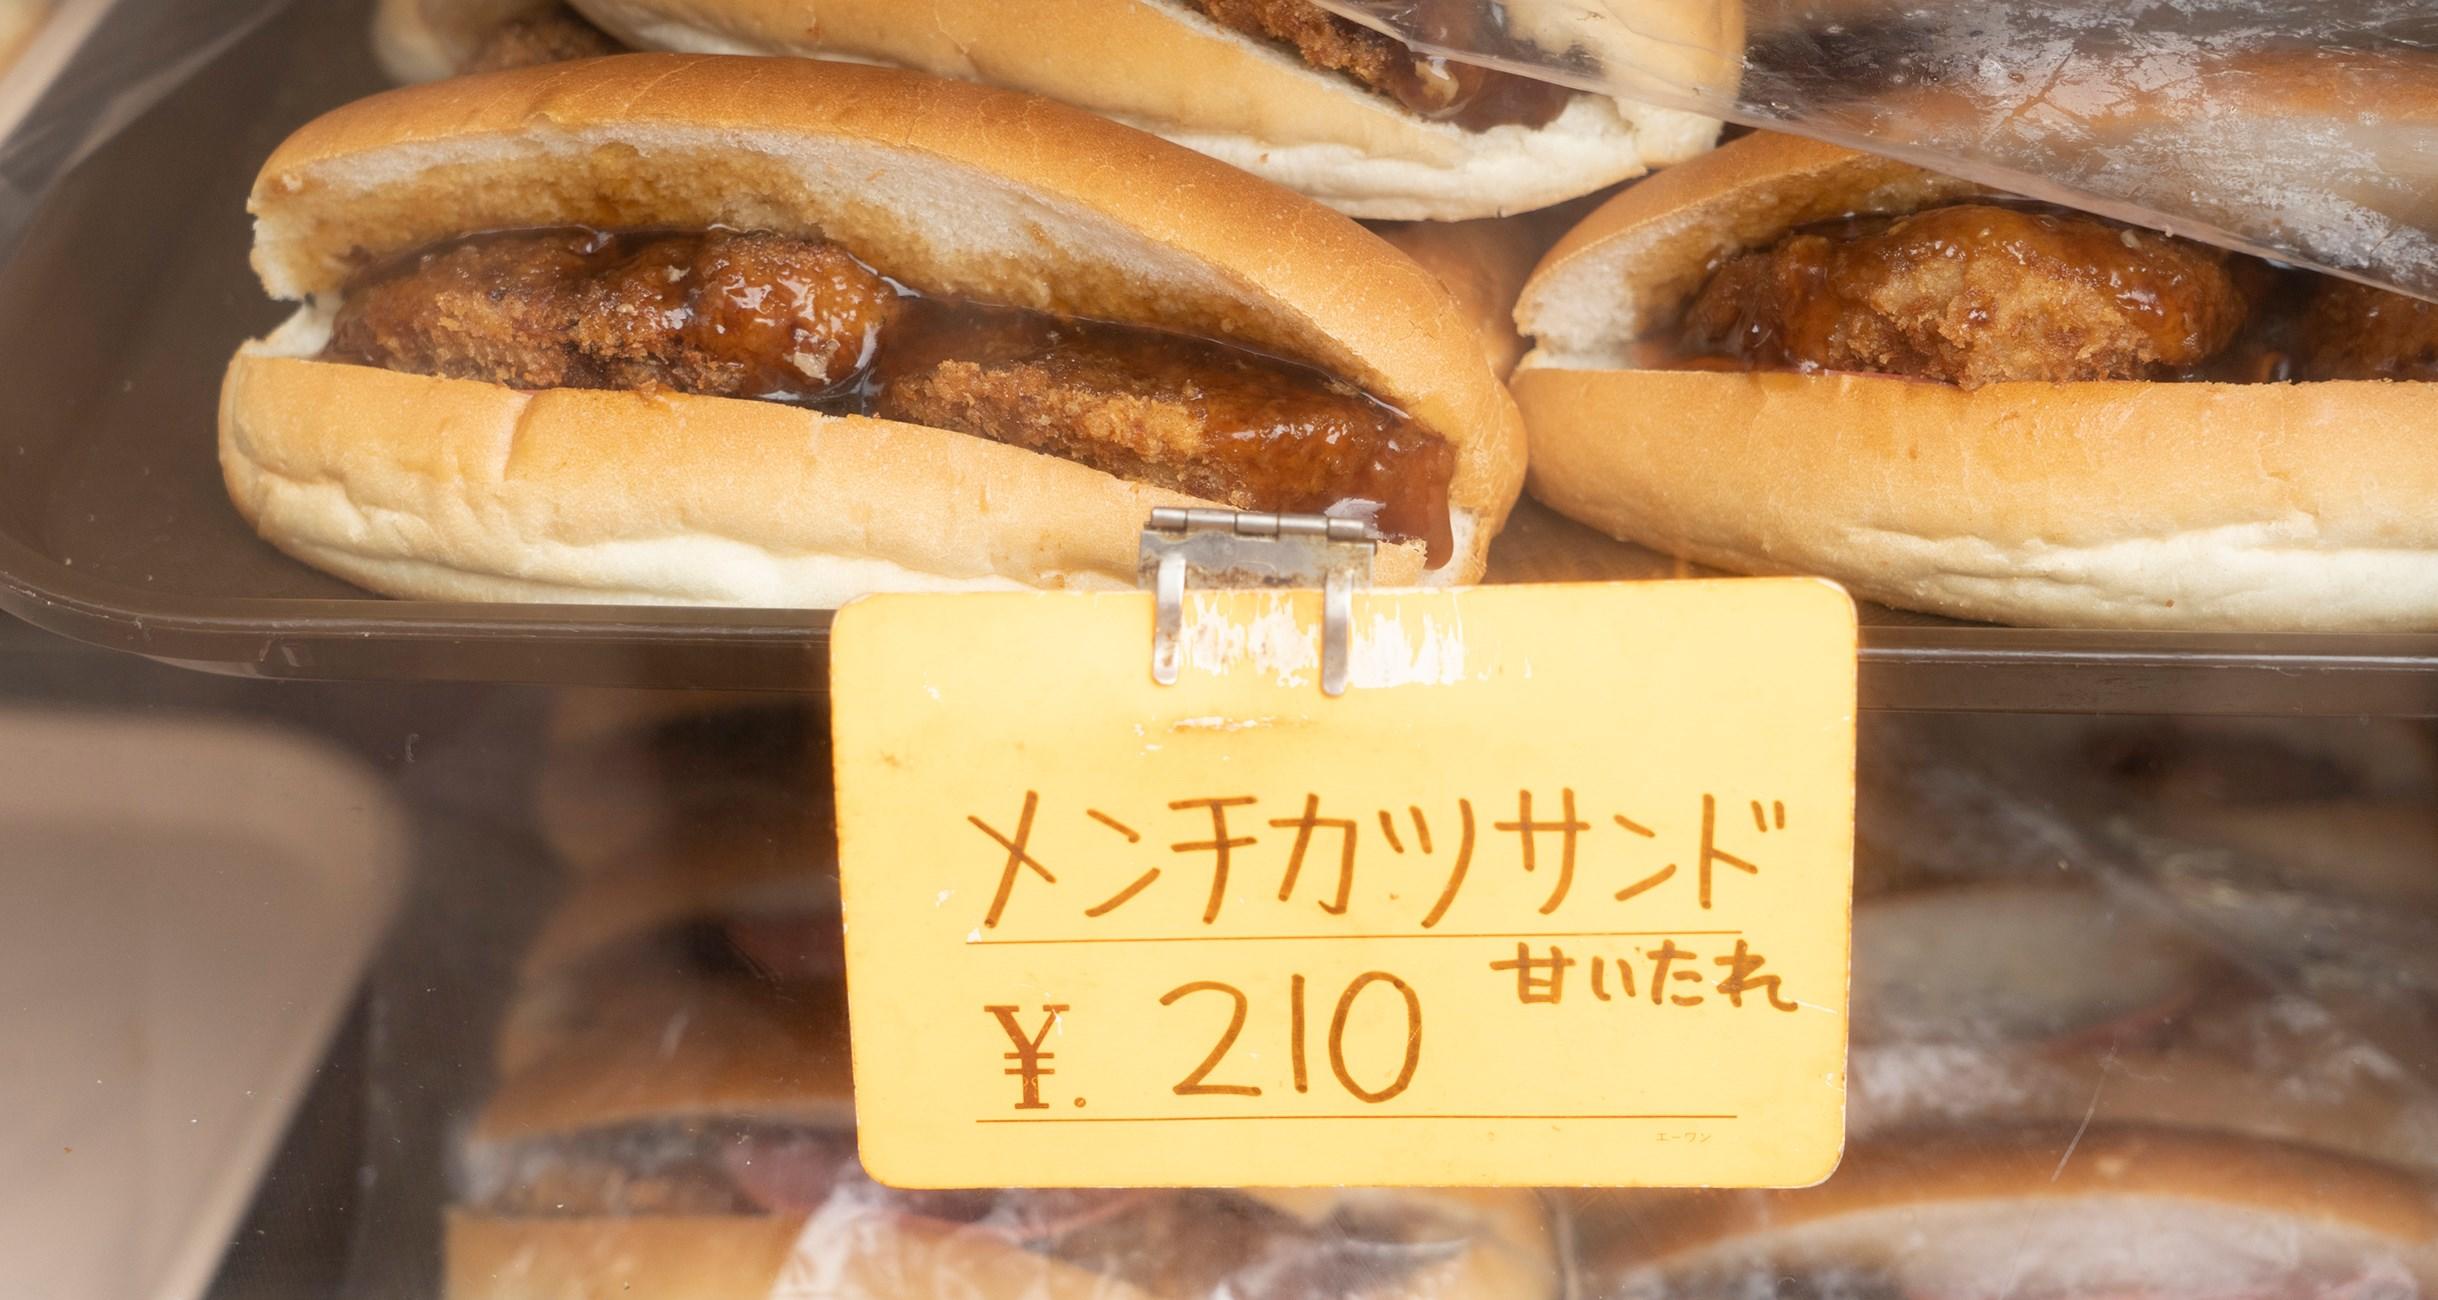 サンドイッチのルーツは「ターザン」だった。 石田ゆうすけさんの青春18きっぷでミラクルミステリーツアー。 【公式】dancyu (ダンチュウ)